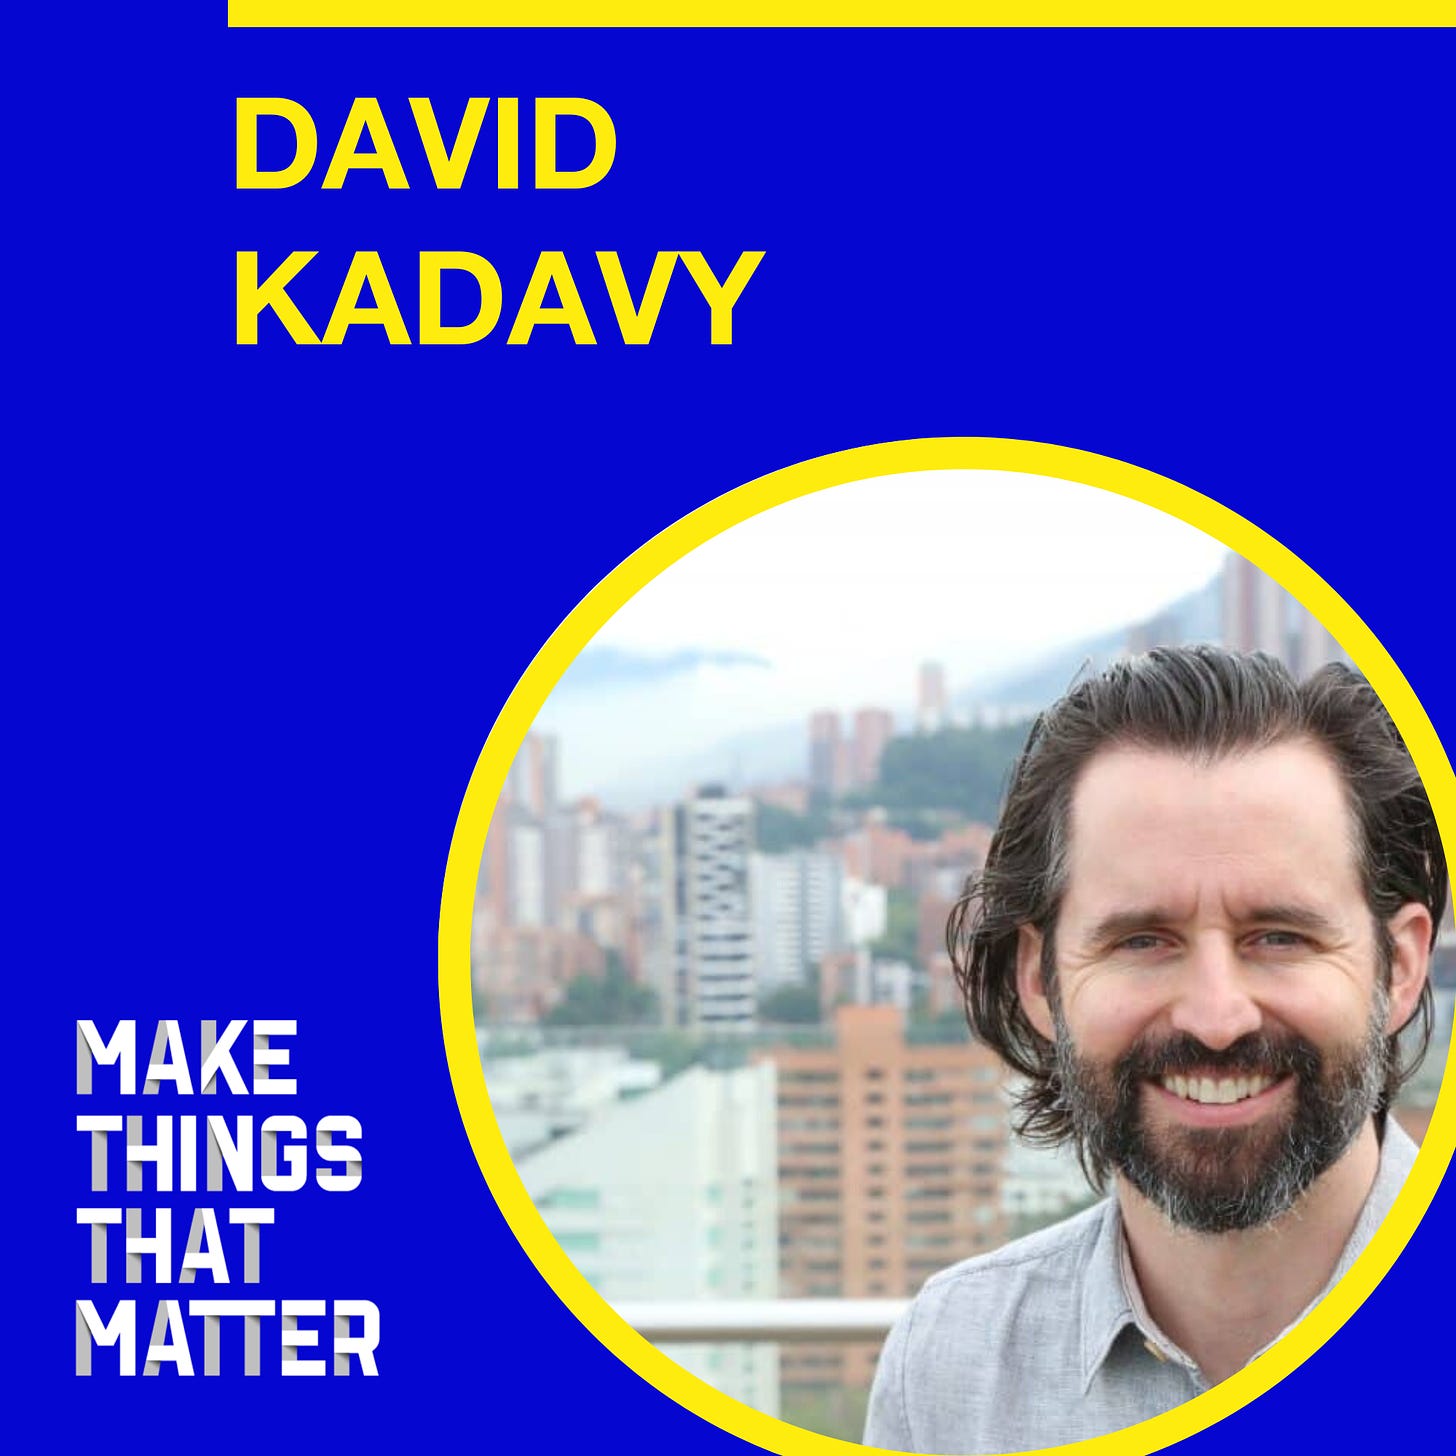 David Kadavy